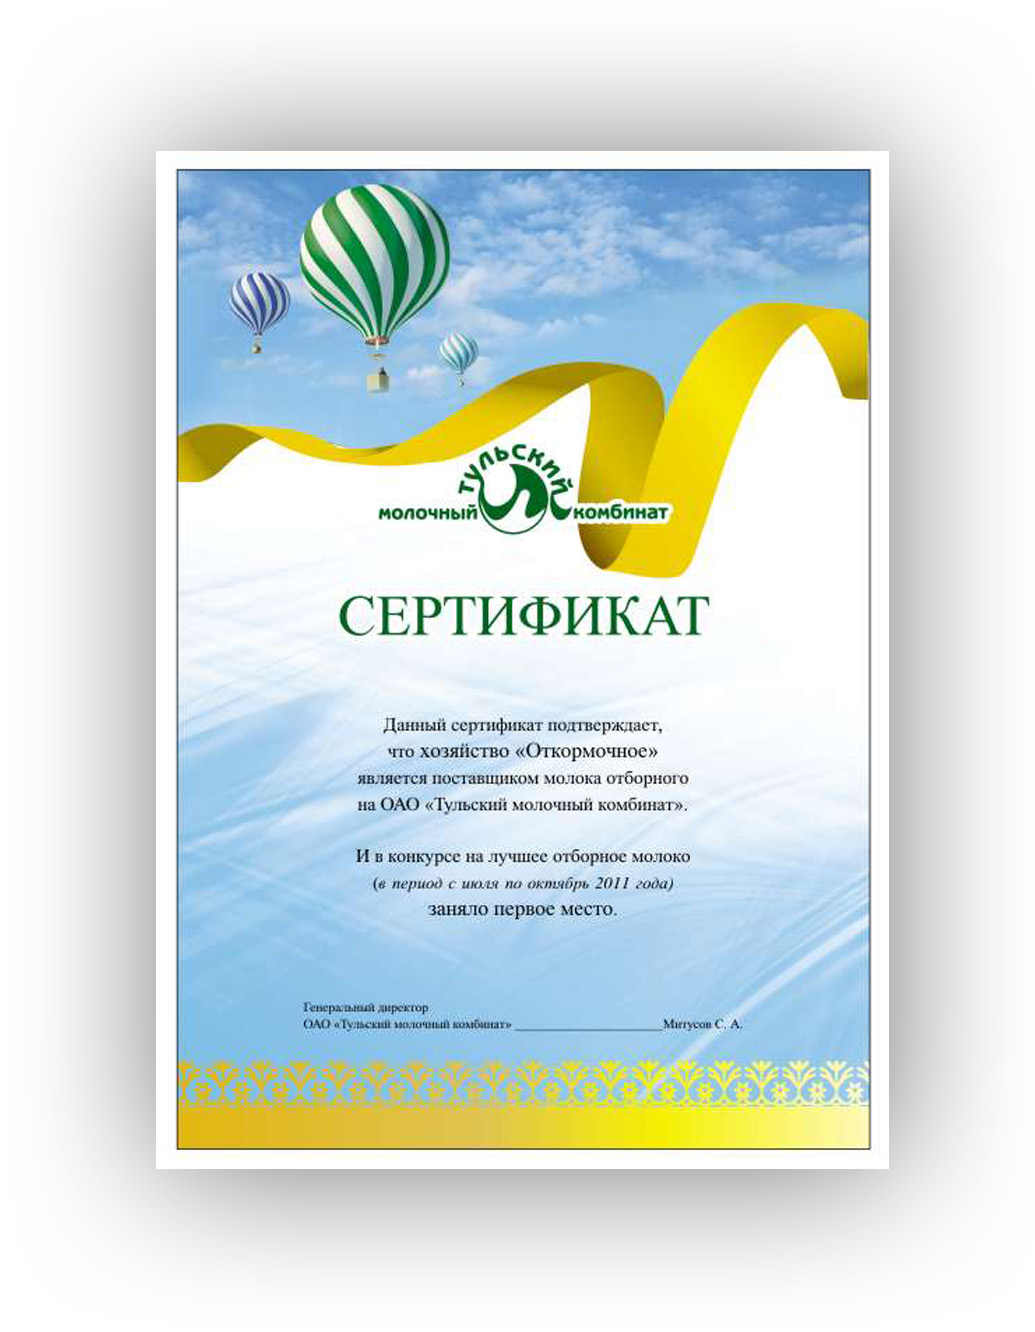 Дизайн сертификата для Тульского молочного комбината